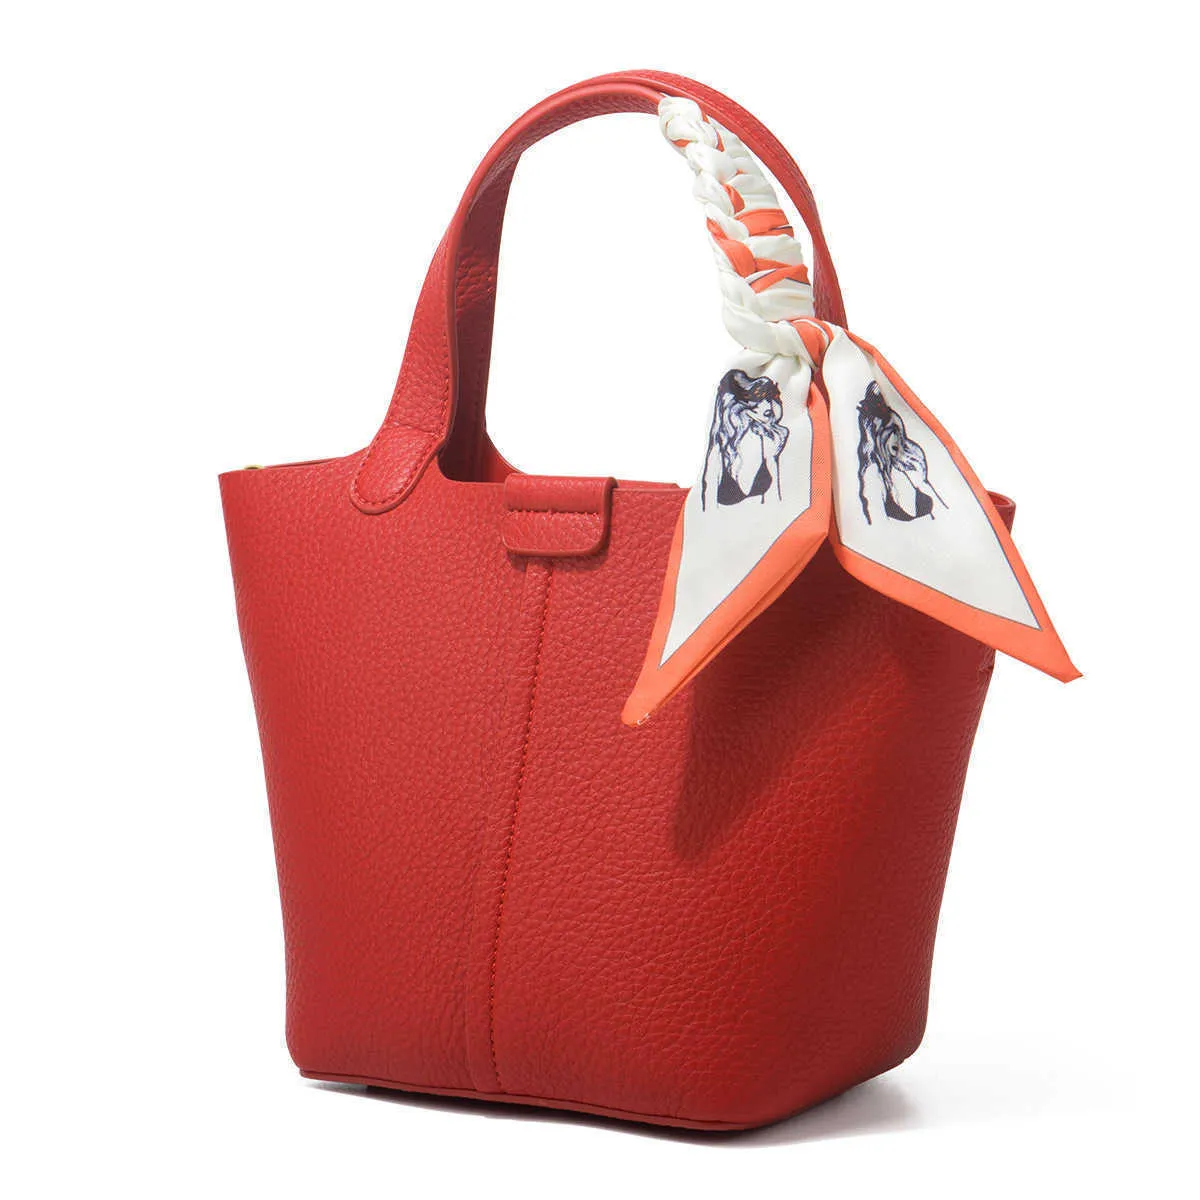 Designer Picotin Lock Bag Regali sciarpe borse da sposa rosse per regali di sposi borse a tracolla da donna 42UR